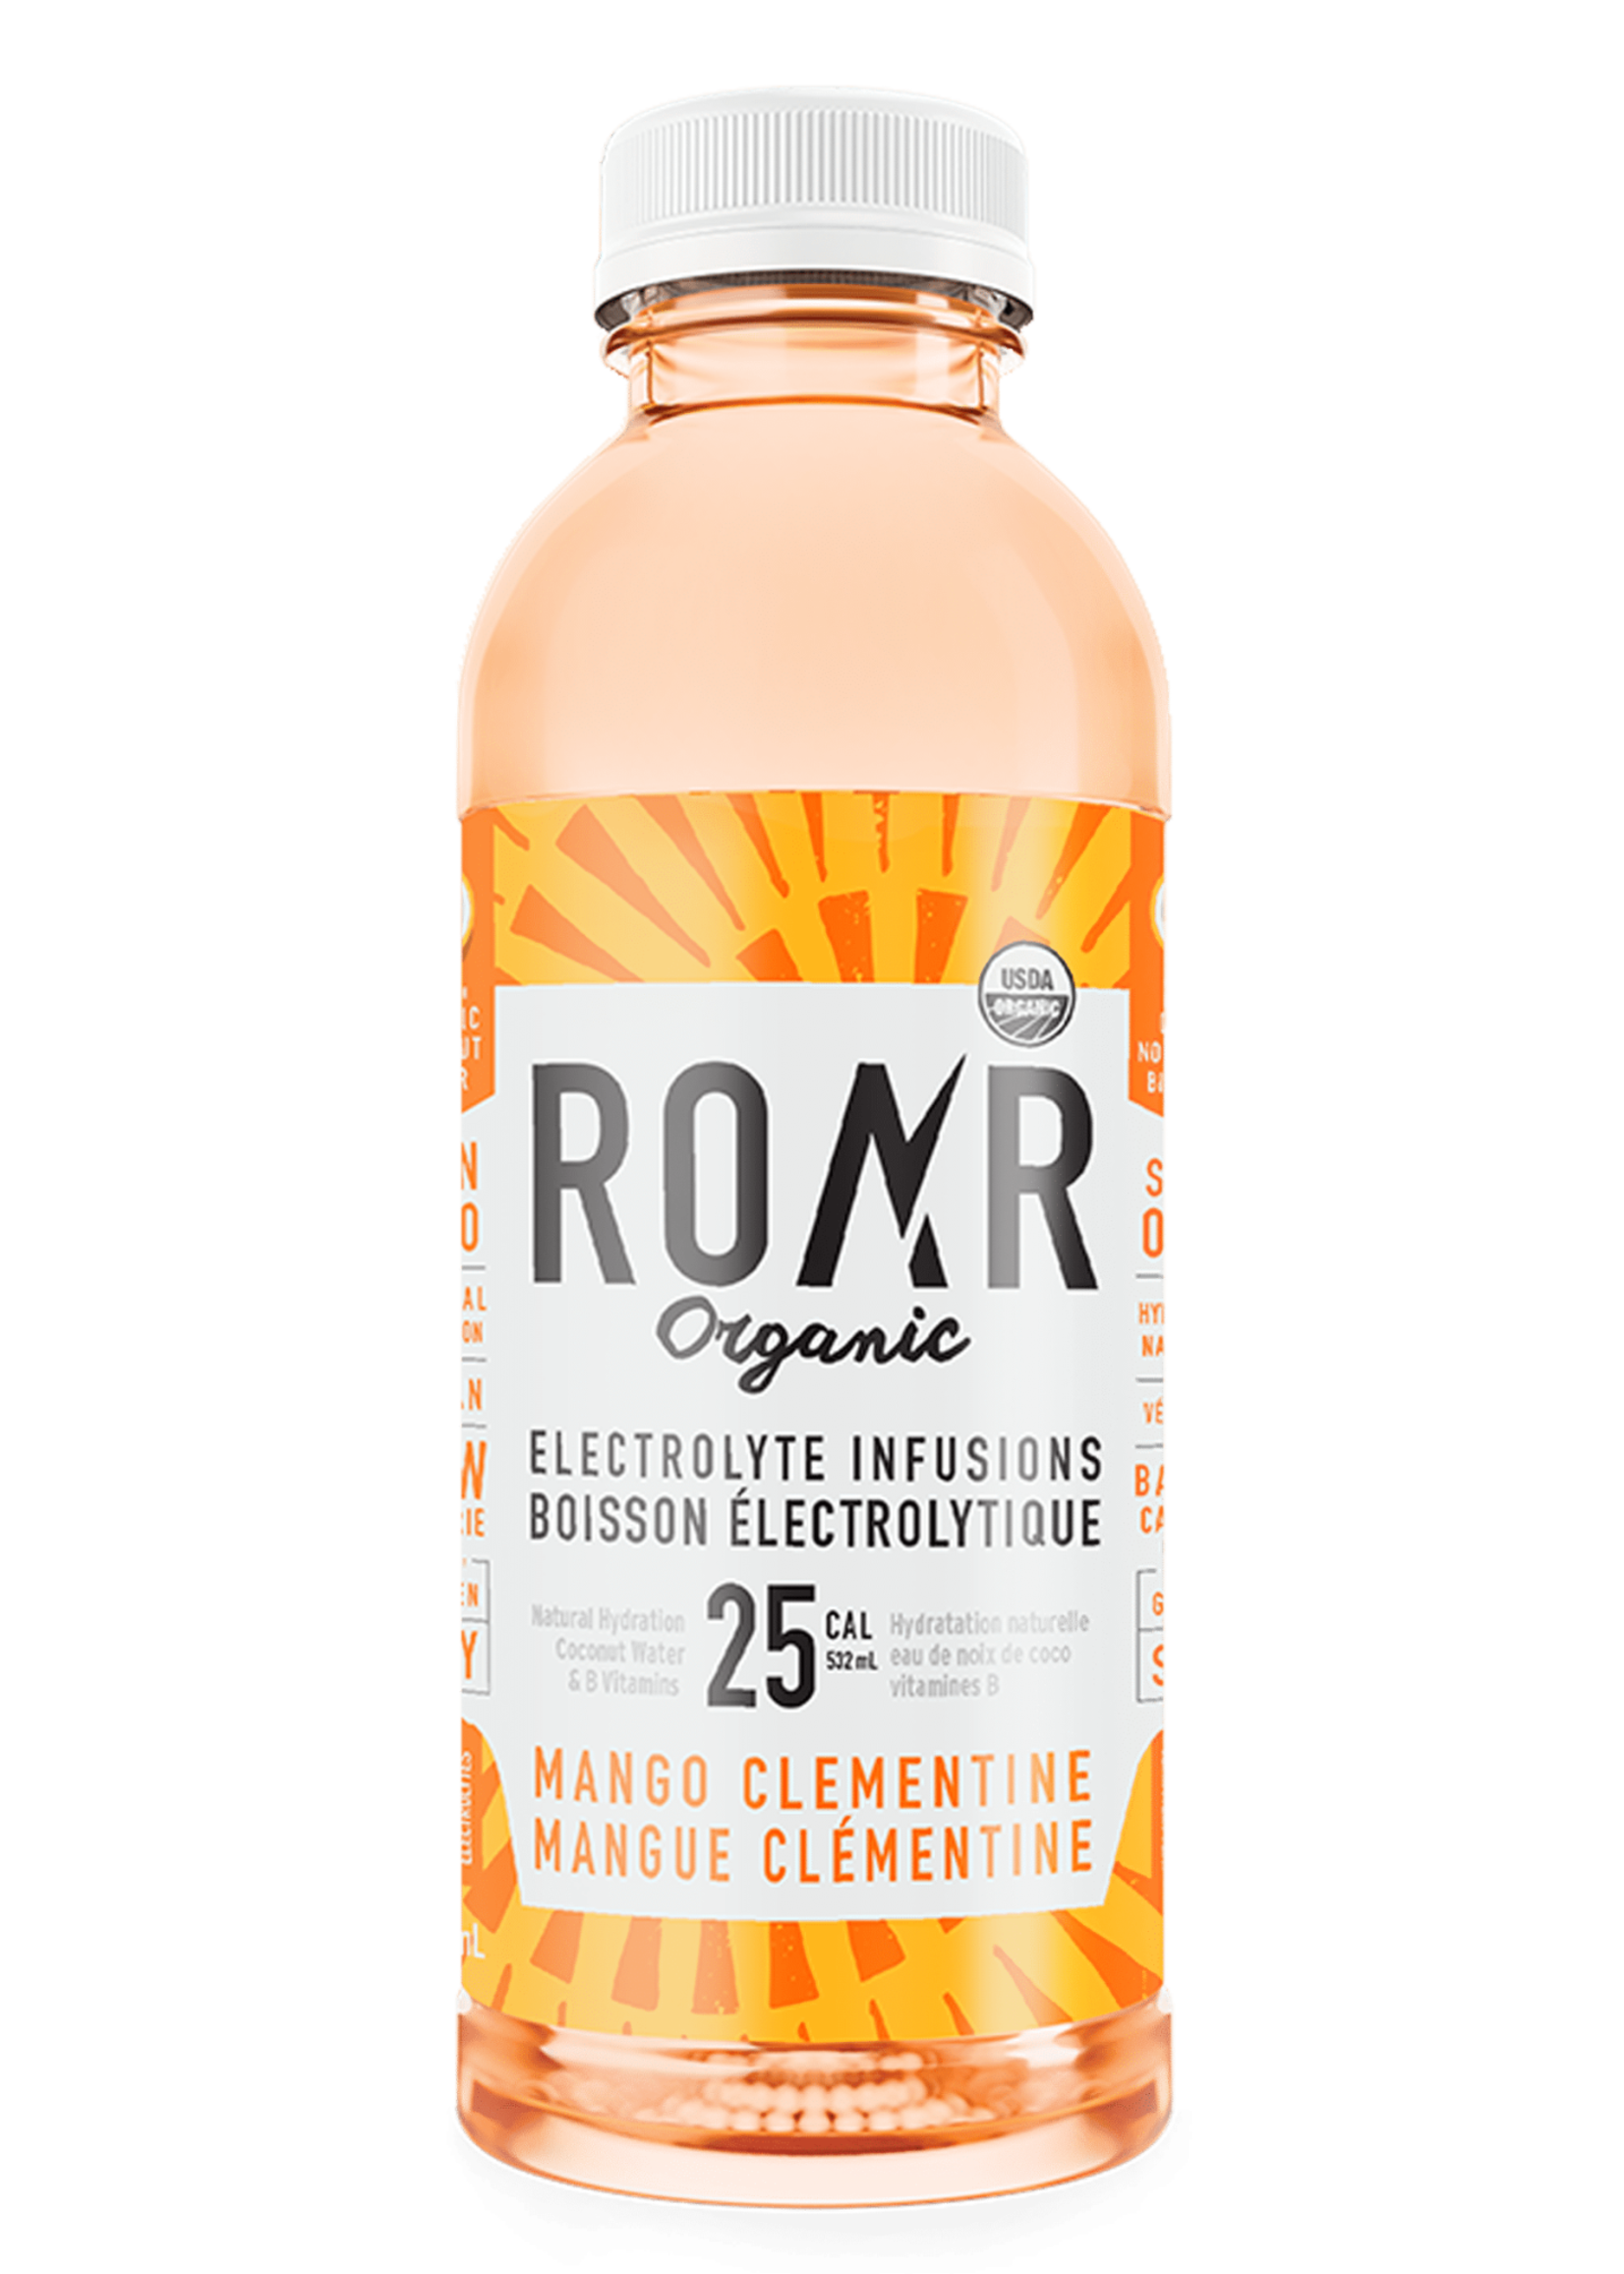 Roar Boissons électrolytes - ROAR